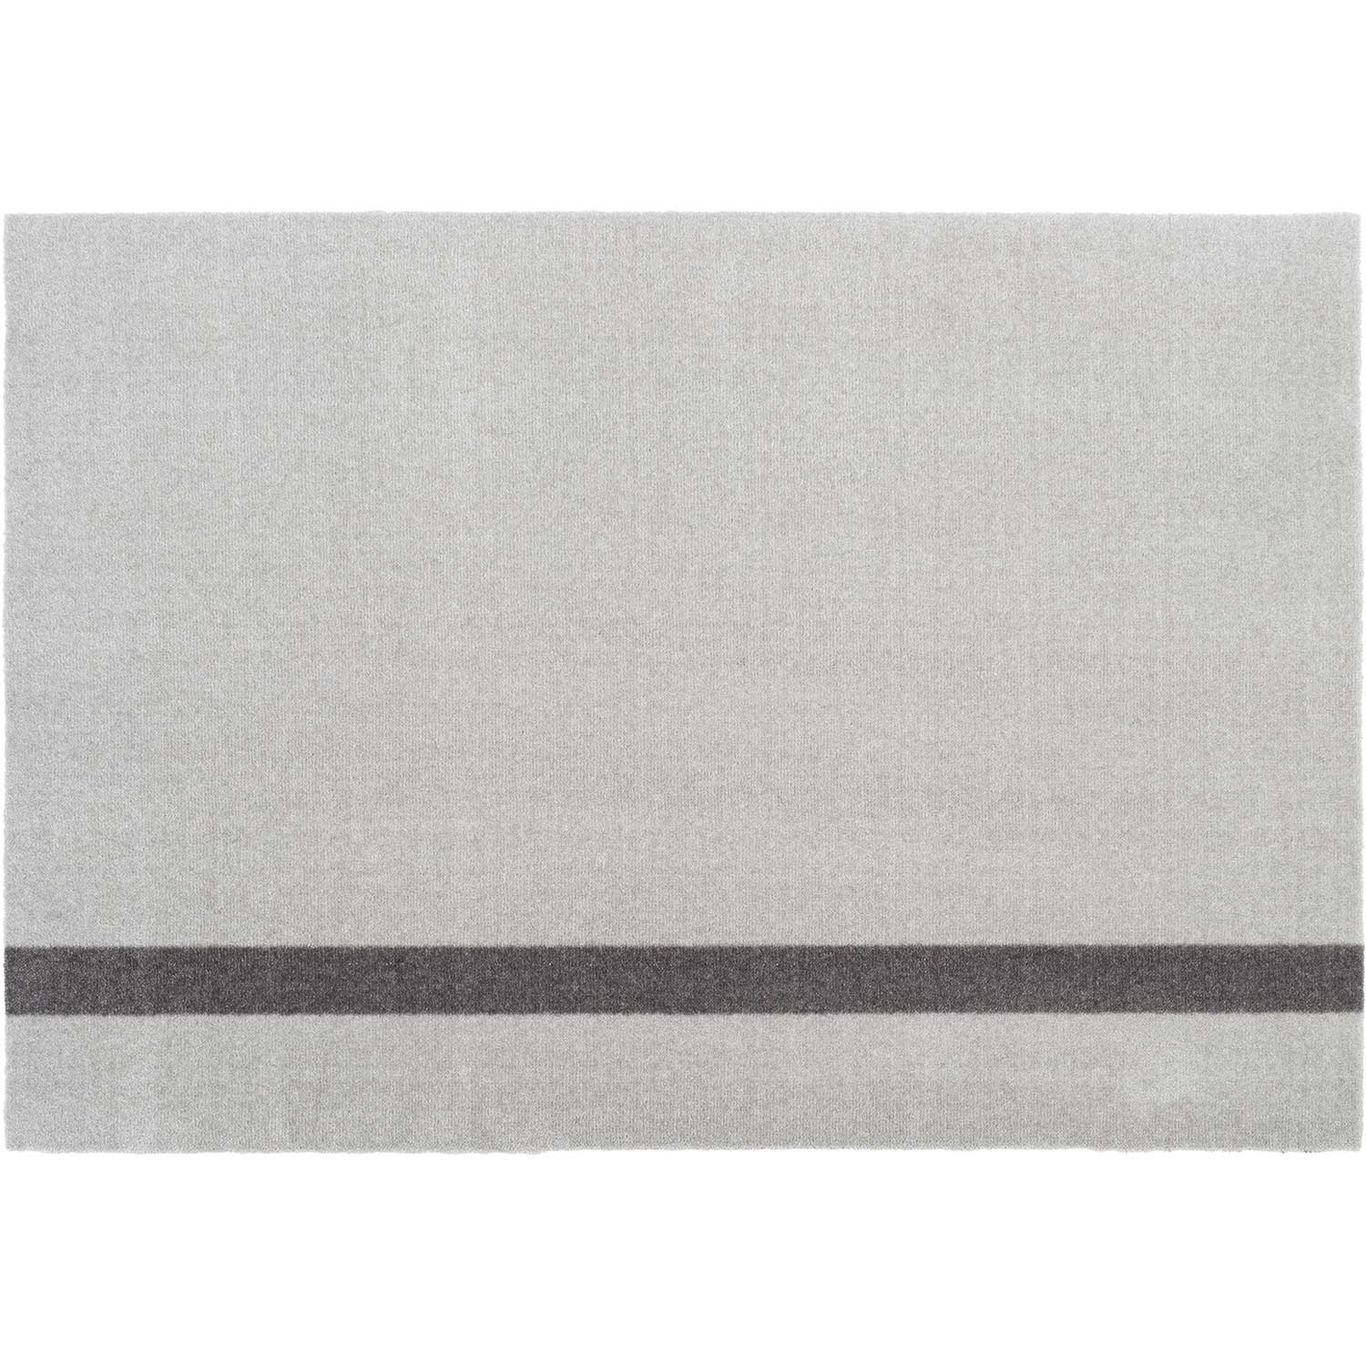 Stripes Vertikal Matta Ljusgrå / Steel Grey, 90x130 cm